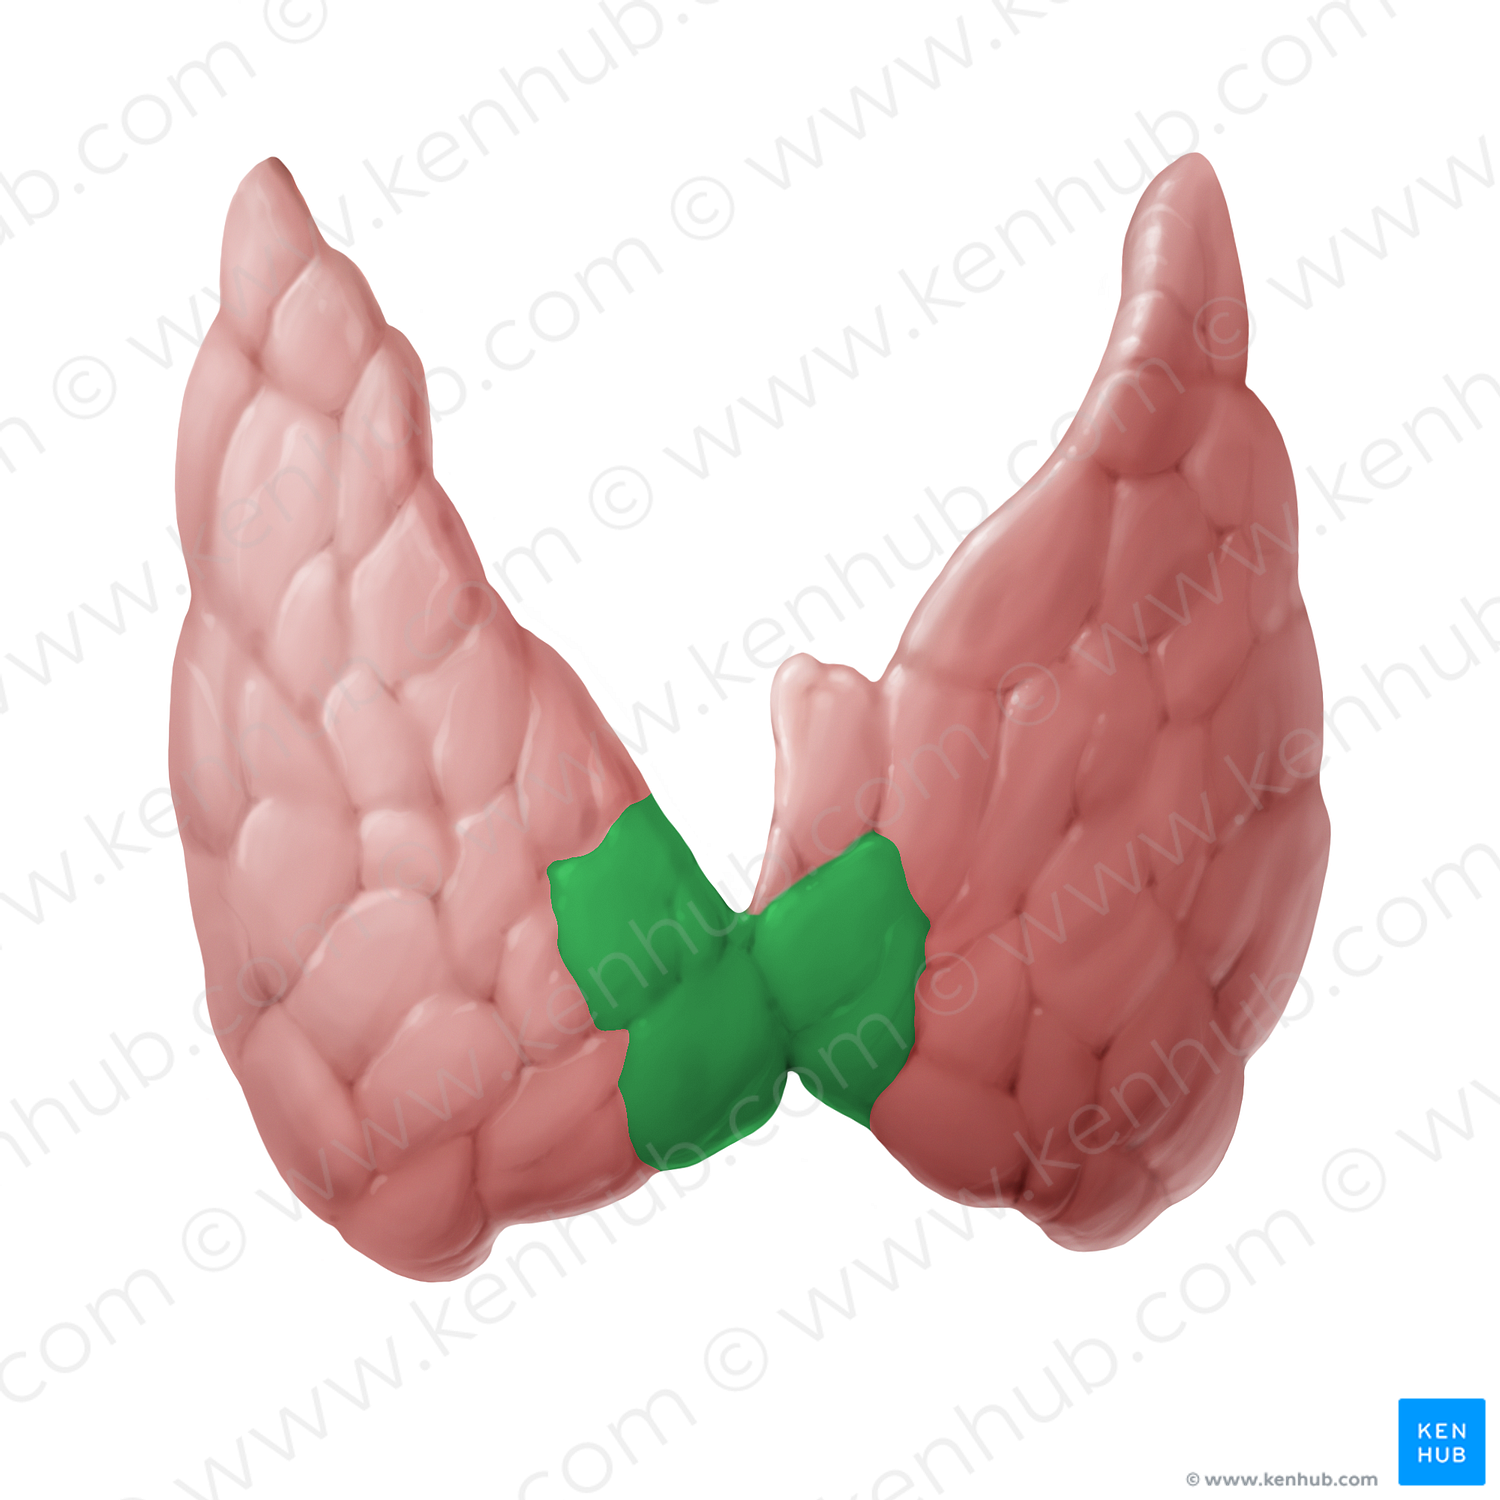 Isthmus of thyroid gland (#14109)